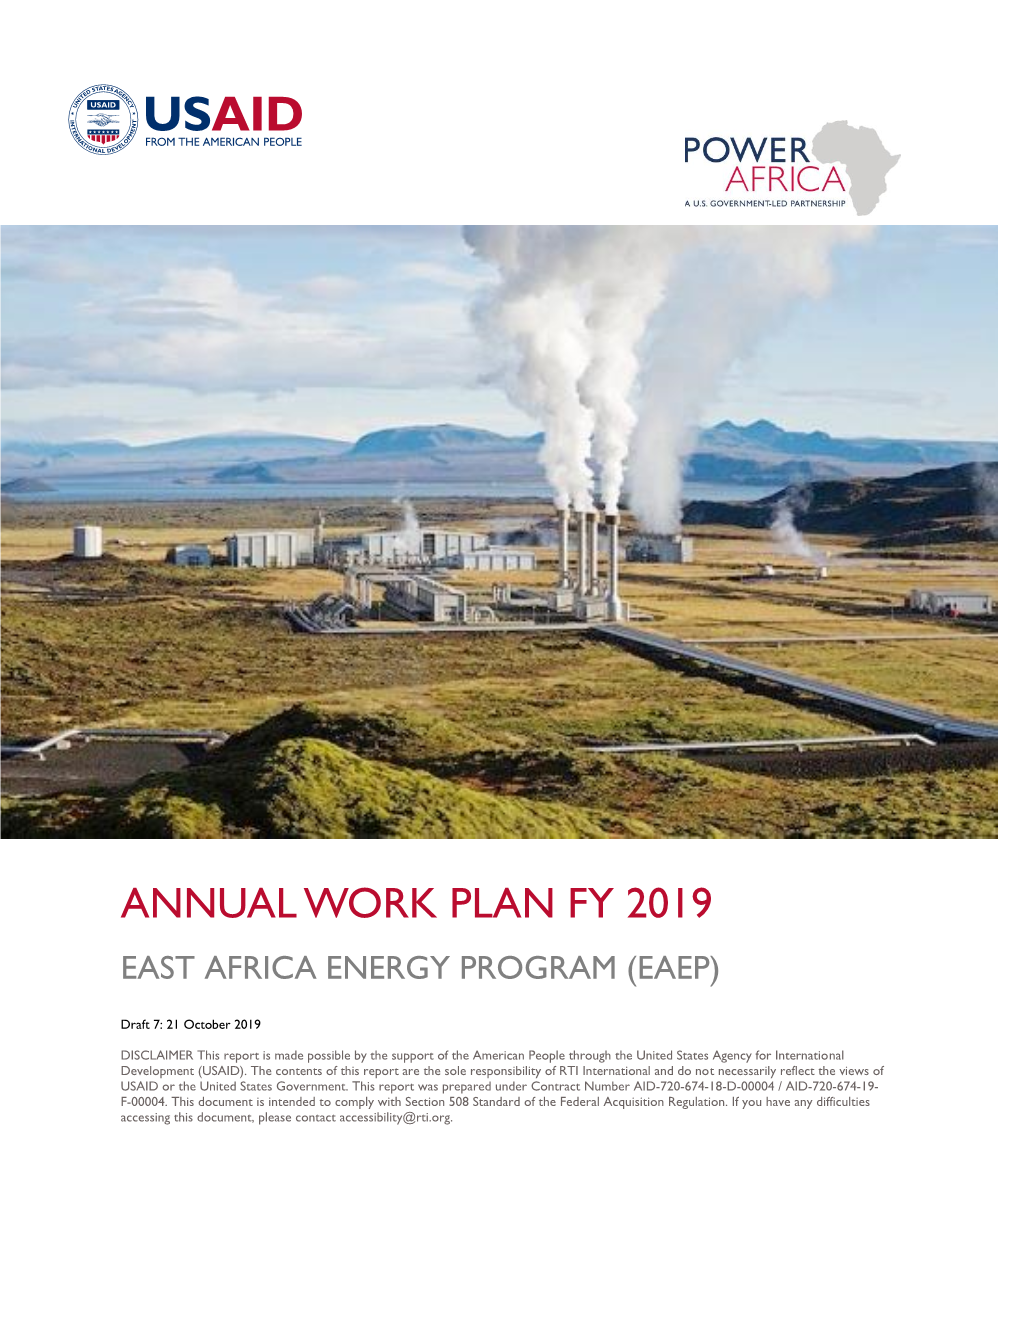 Annual Work Plan Fy 2019 East Africa Energy Program (Eaep)